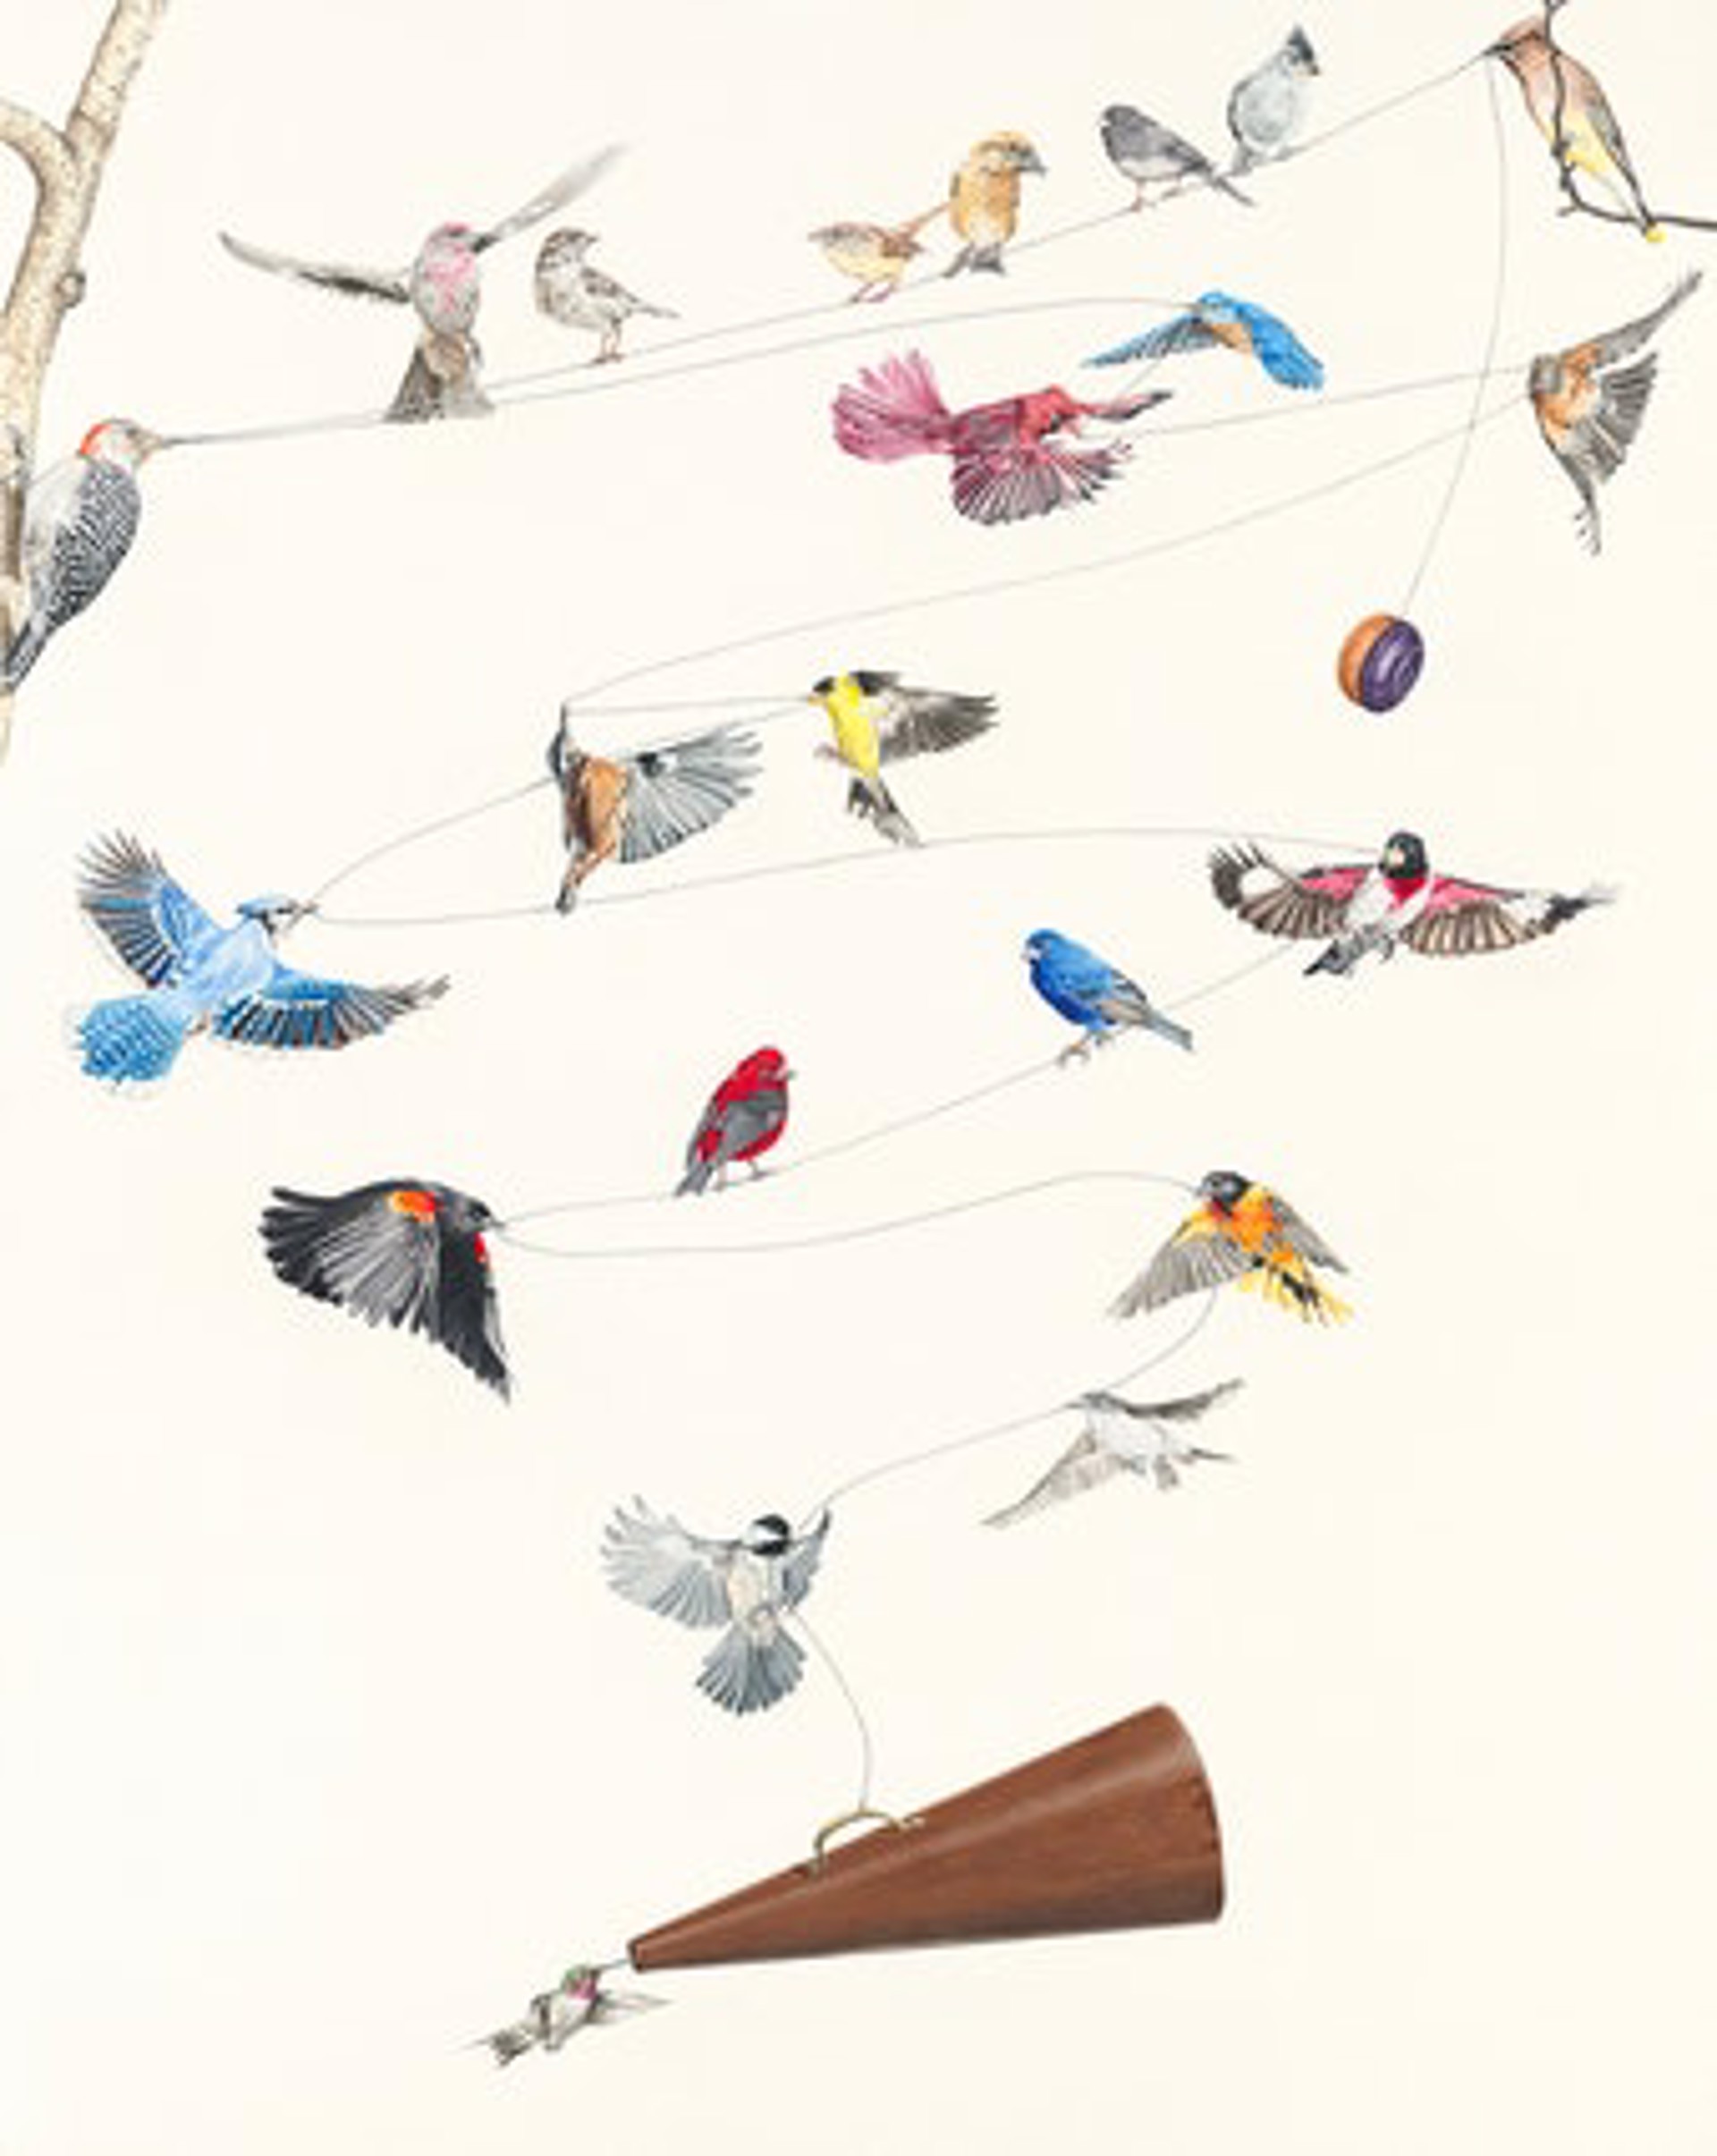 Four Calling Birds - Song Birds Giclee Print by Paul Van Heest